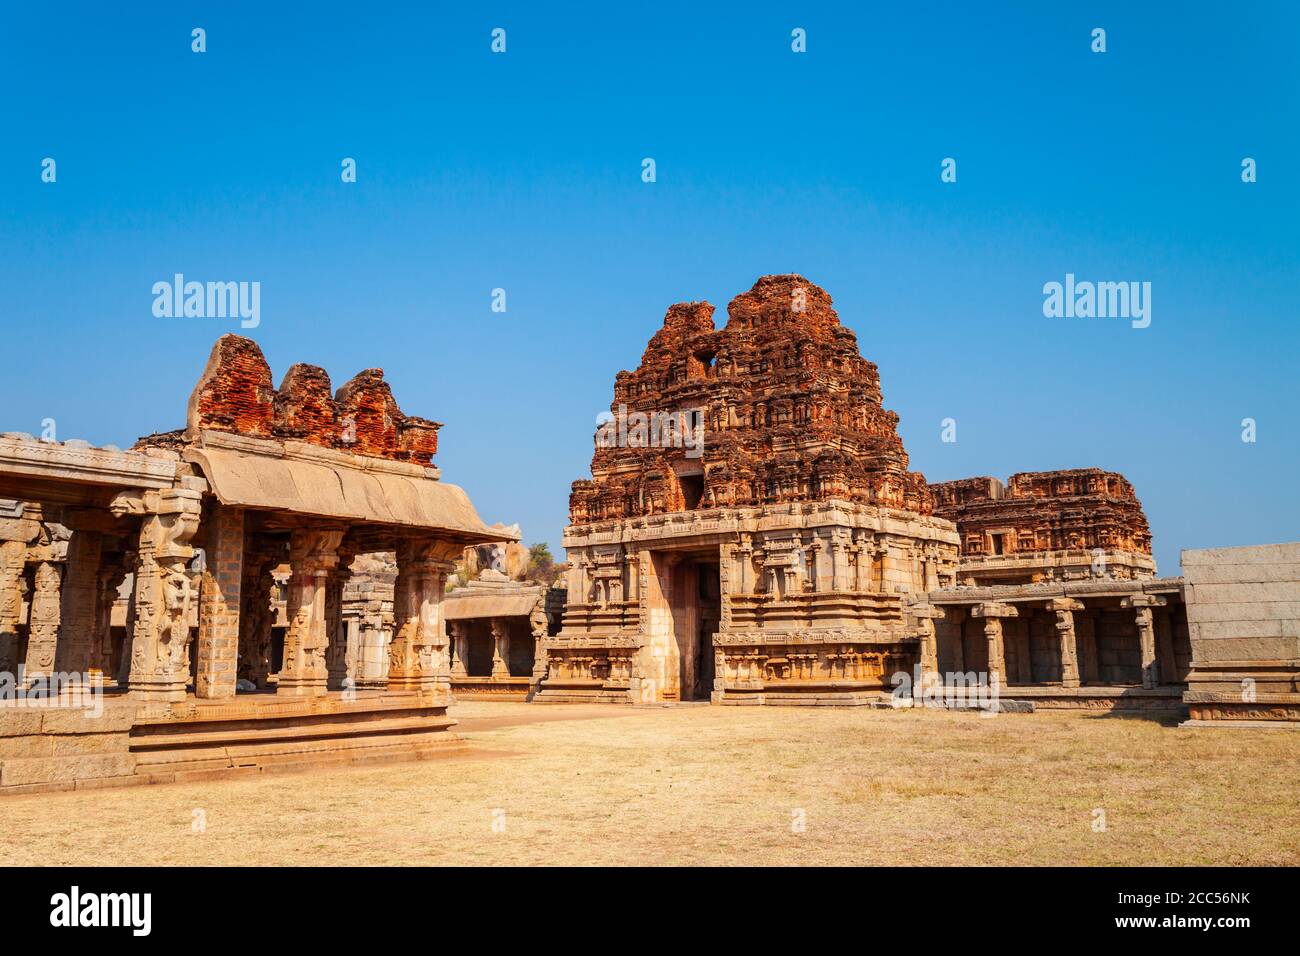 El Grupo de monumentos en Hampi fue el centro del Imperio Vijayanagara hindúes en el estado de Karnataka en la India Foto de stock